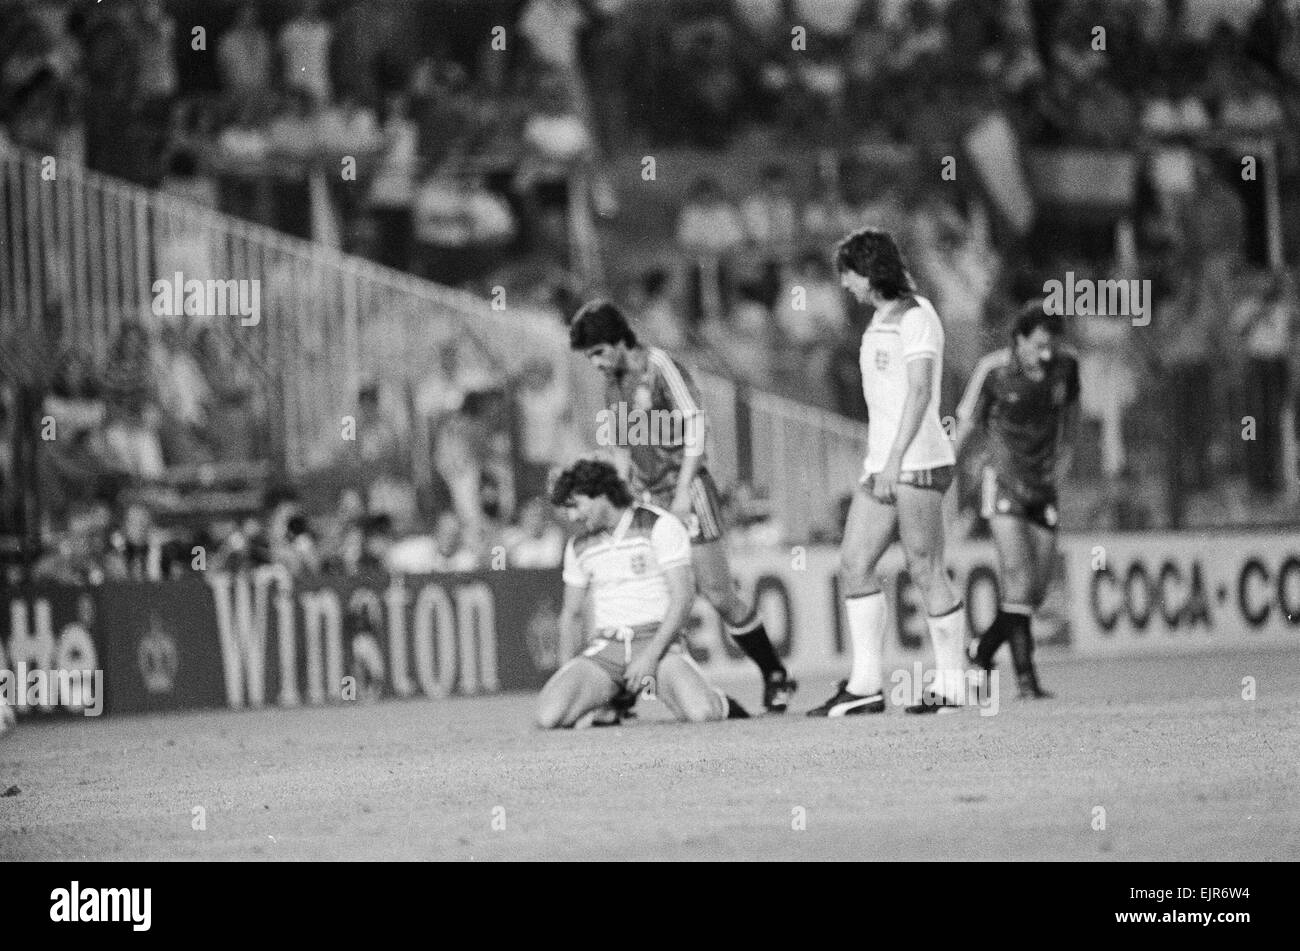 1982 Coppa del Mondo di calcio secondo turno gruppo B corrispondono a Madrid, Spagna. Spagna 0 v Inghilterra 0. L'Inghilterra del Kevin Keegan sconsolato dopo manca un gol chance. Il 29 giugno 1982. Foto Stock